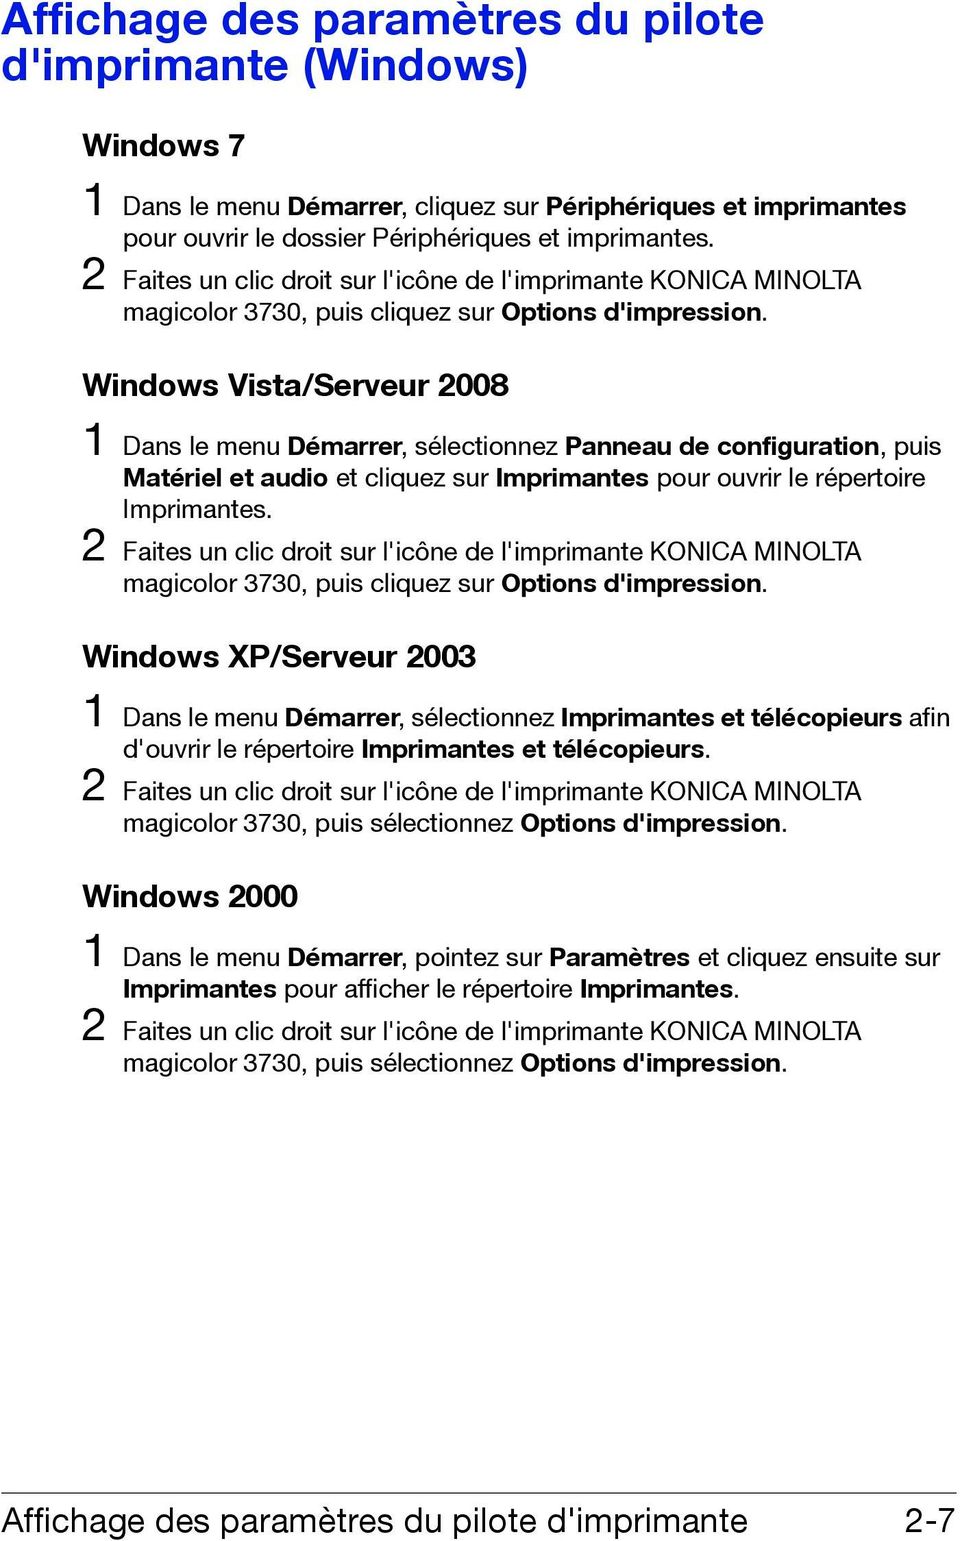 Windows Vista/Serveur 2008 1 Dans le menu Démarrer, sélectionnez Panneau de configuration, puis Matériel et audio et cliquez sur Imprimantes pour ouvrir le répertoire Imprimantes.